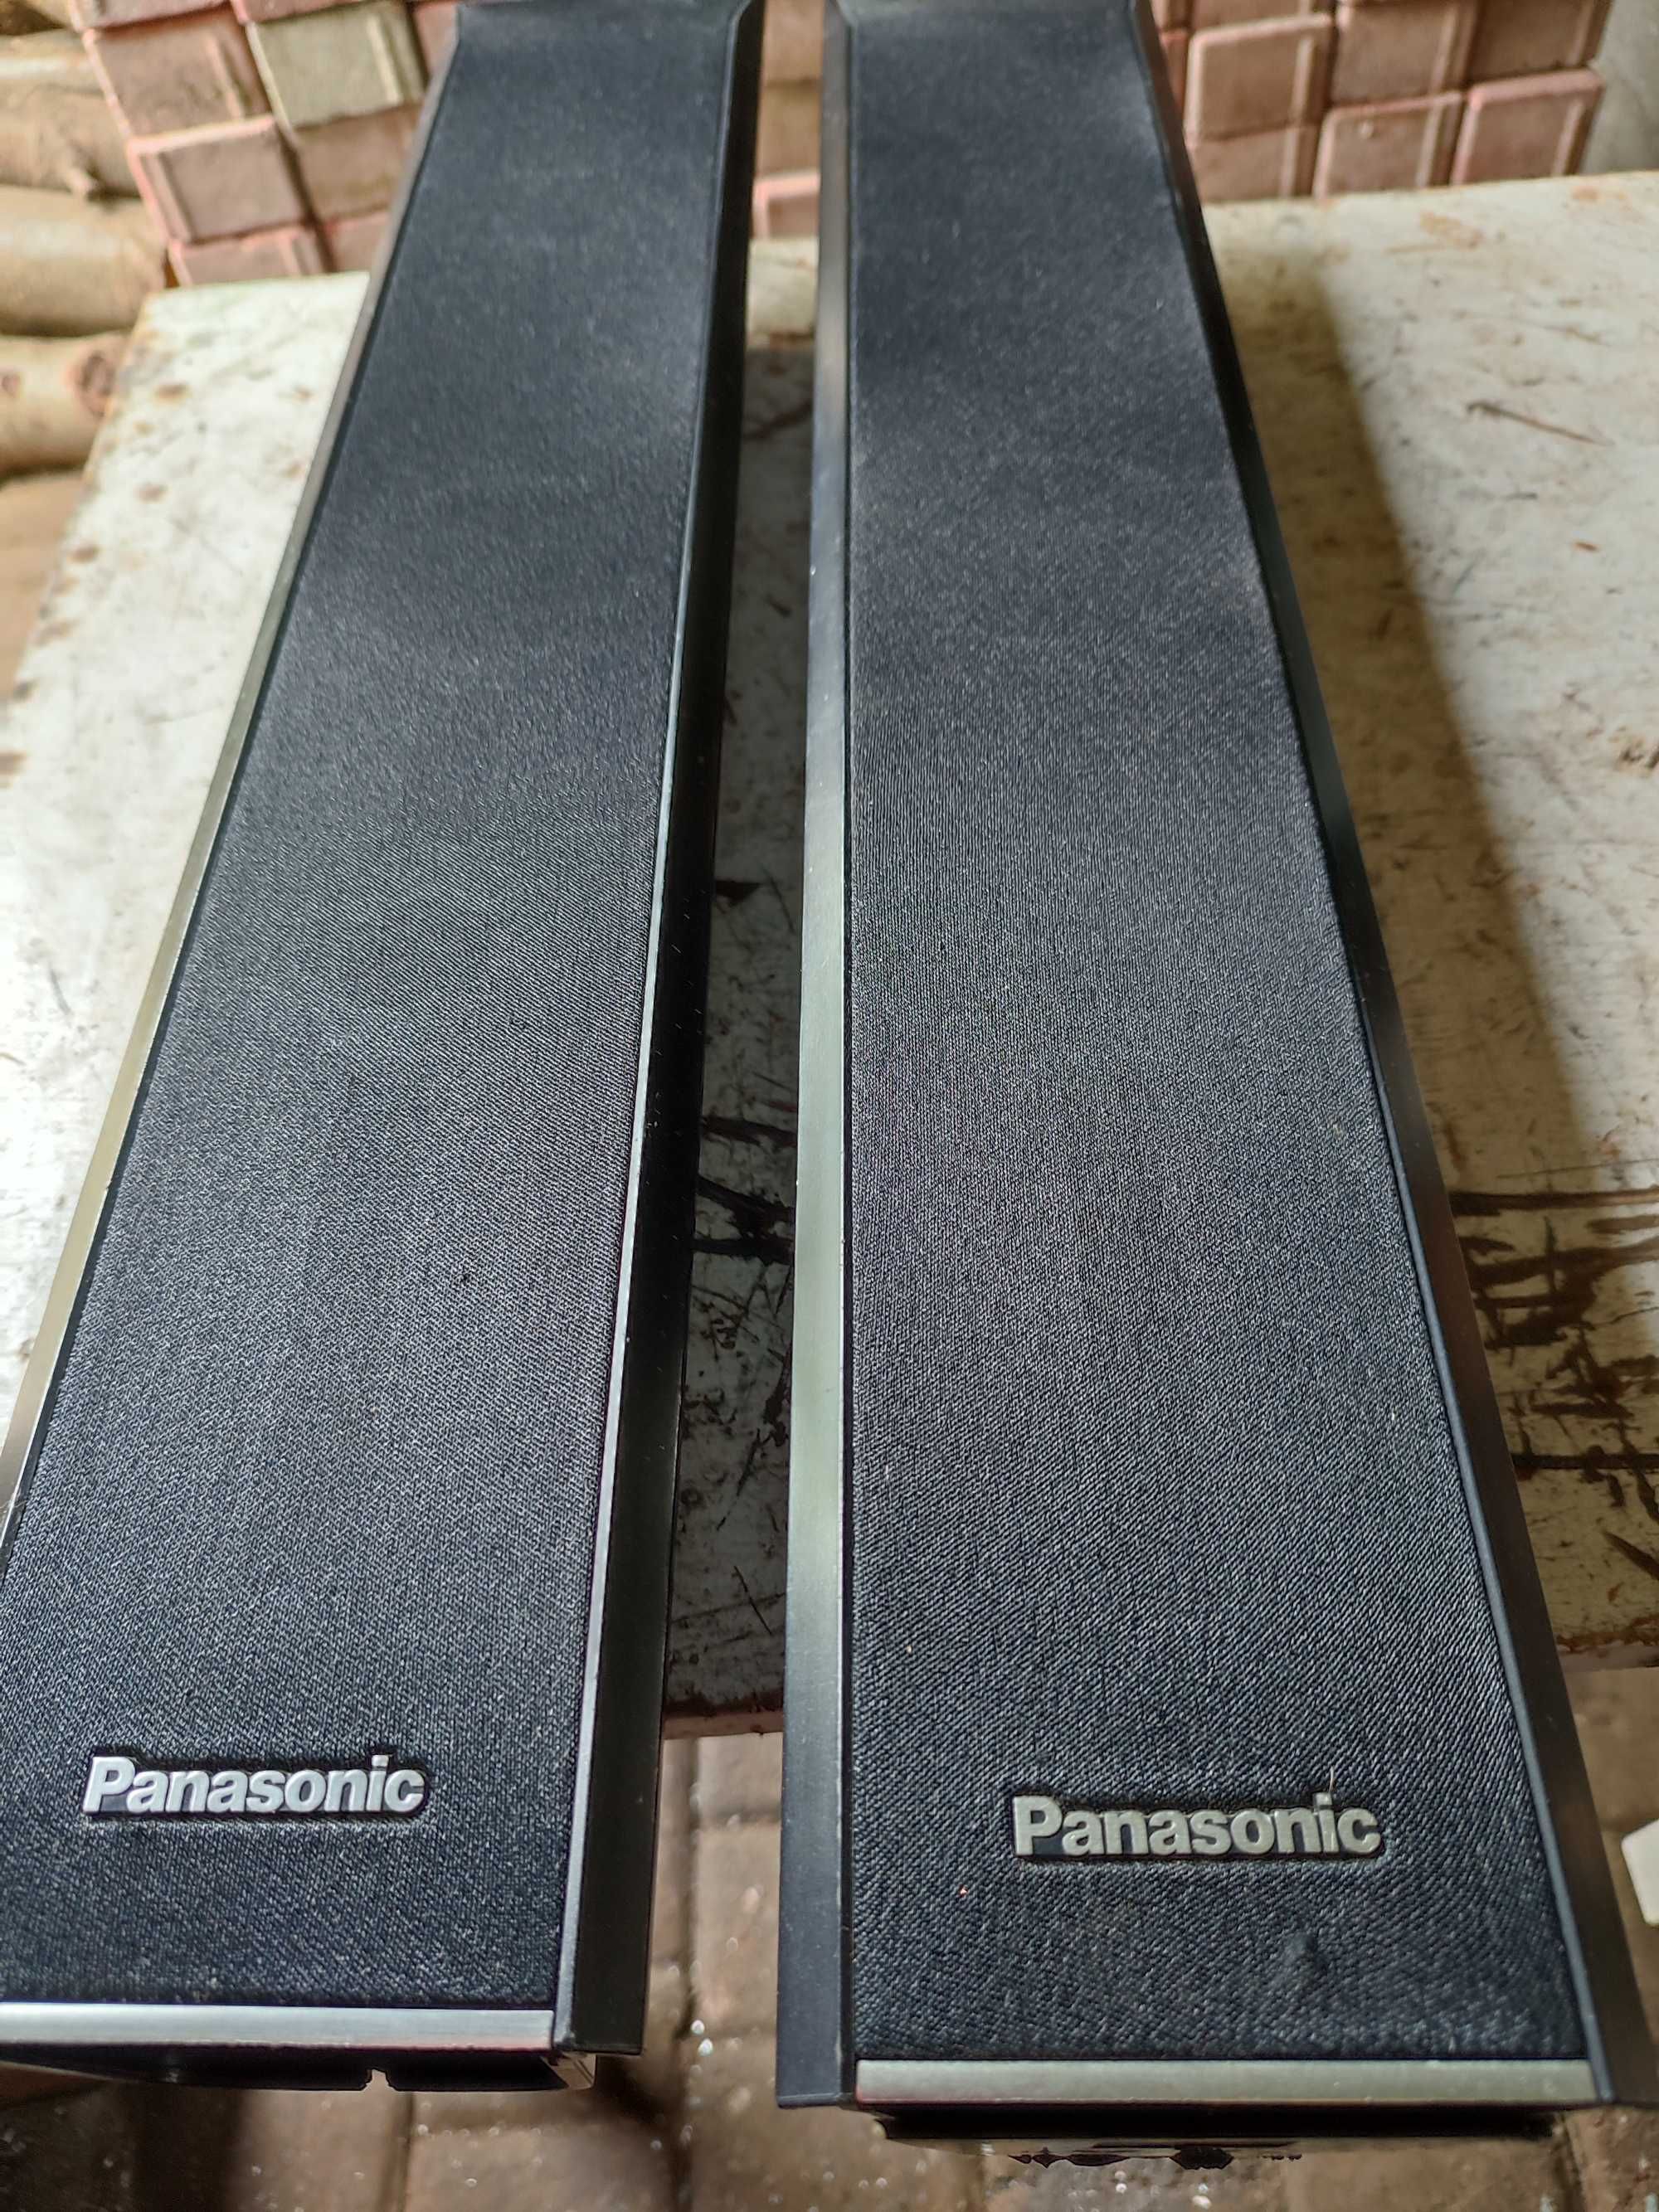 Głośniki Panasonic - 2 sztuki okazj0